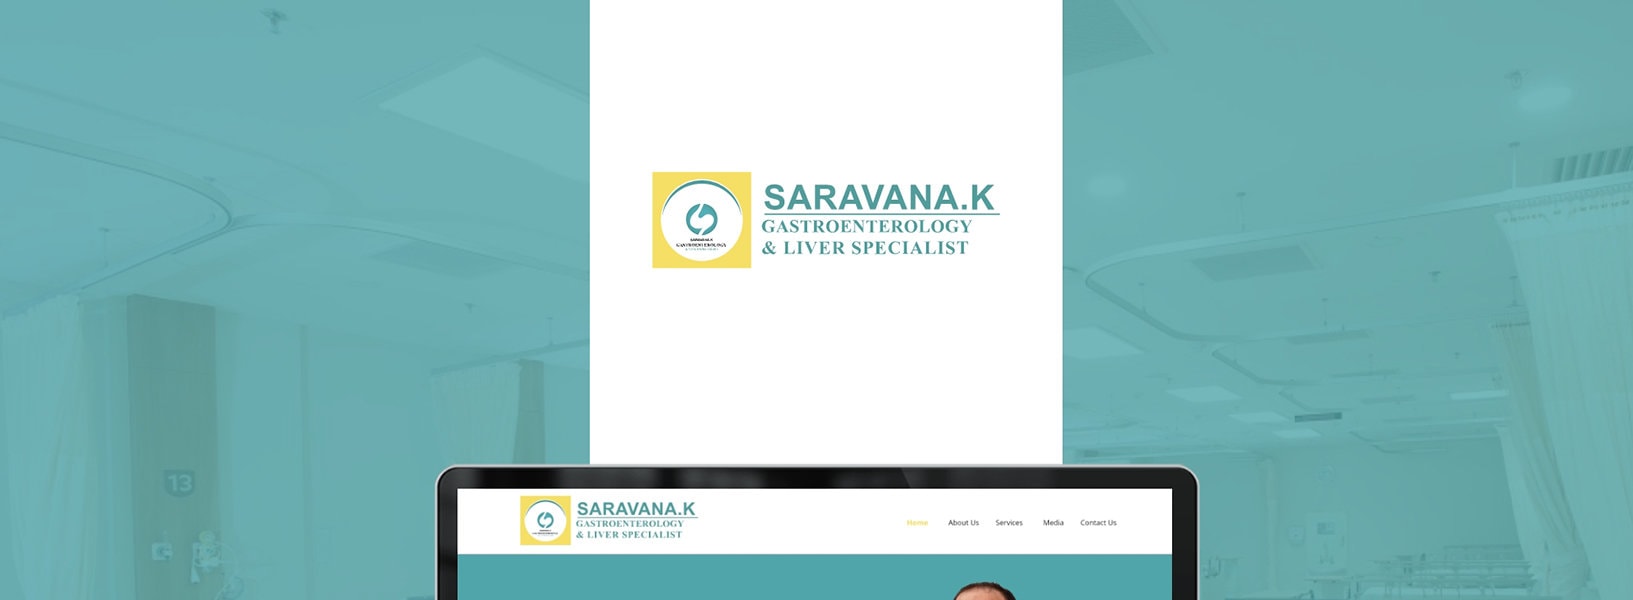 Dr-Saravana_01